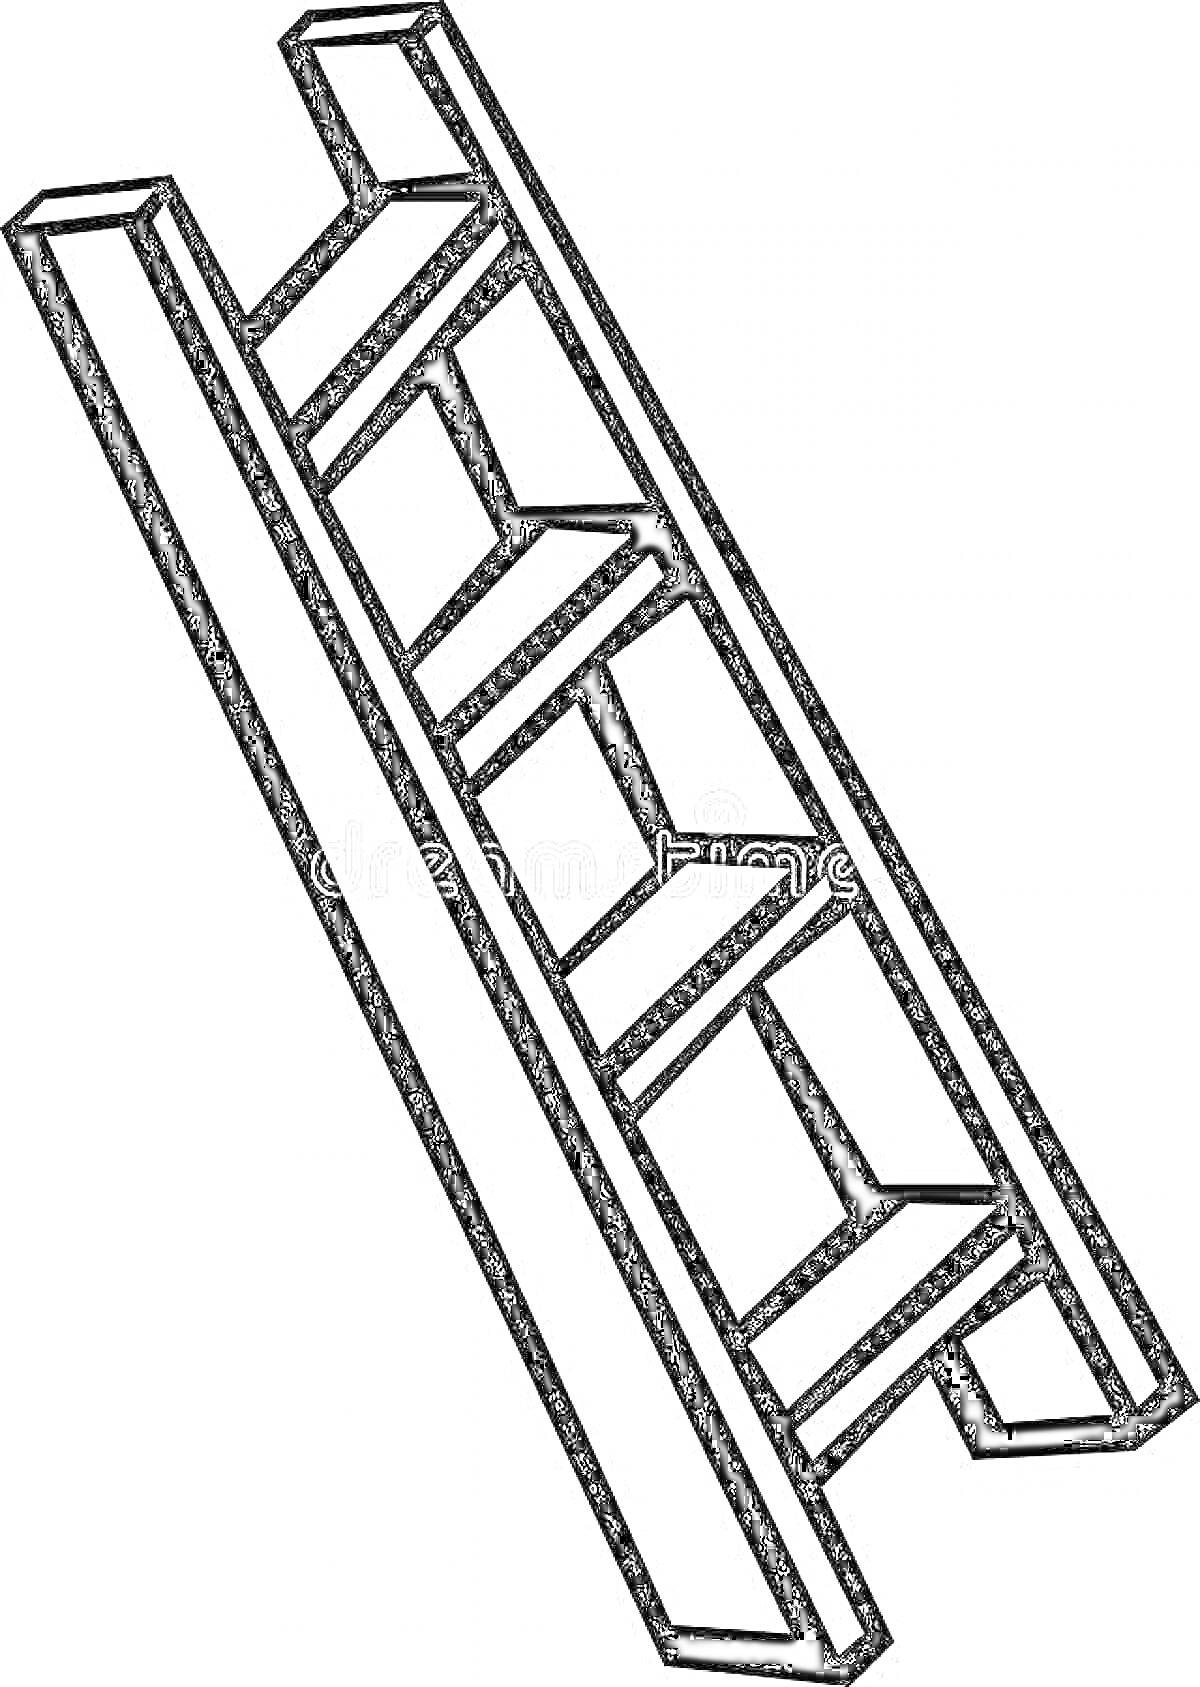 Раскраска Лестница с пятью ступеньками, изображенная под углом